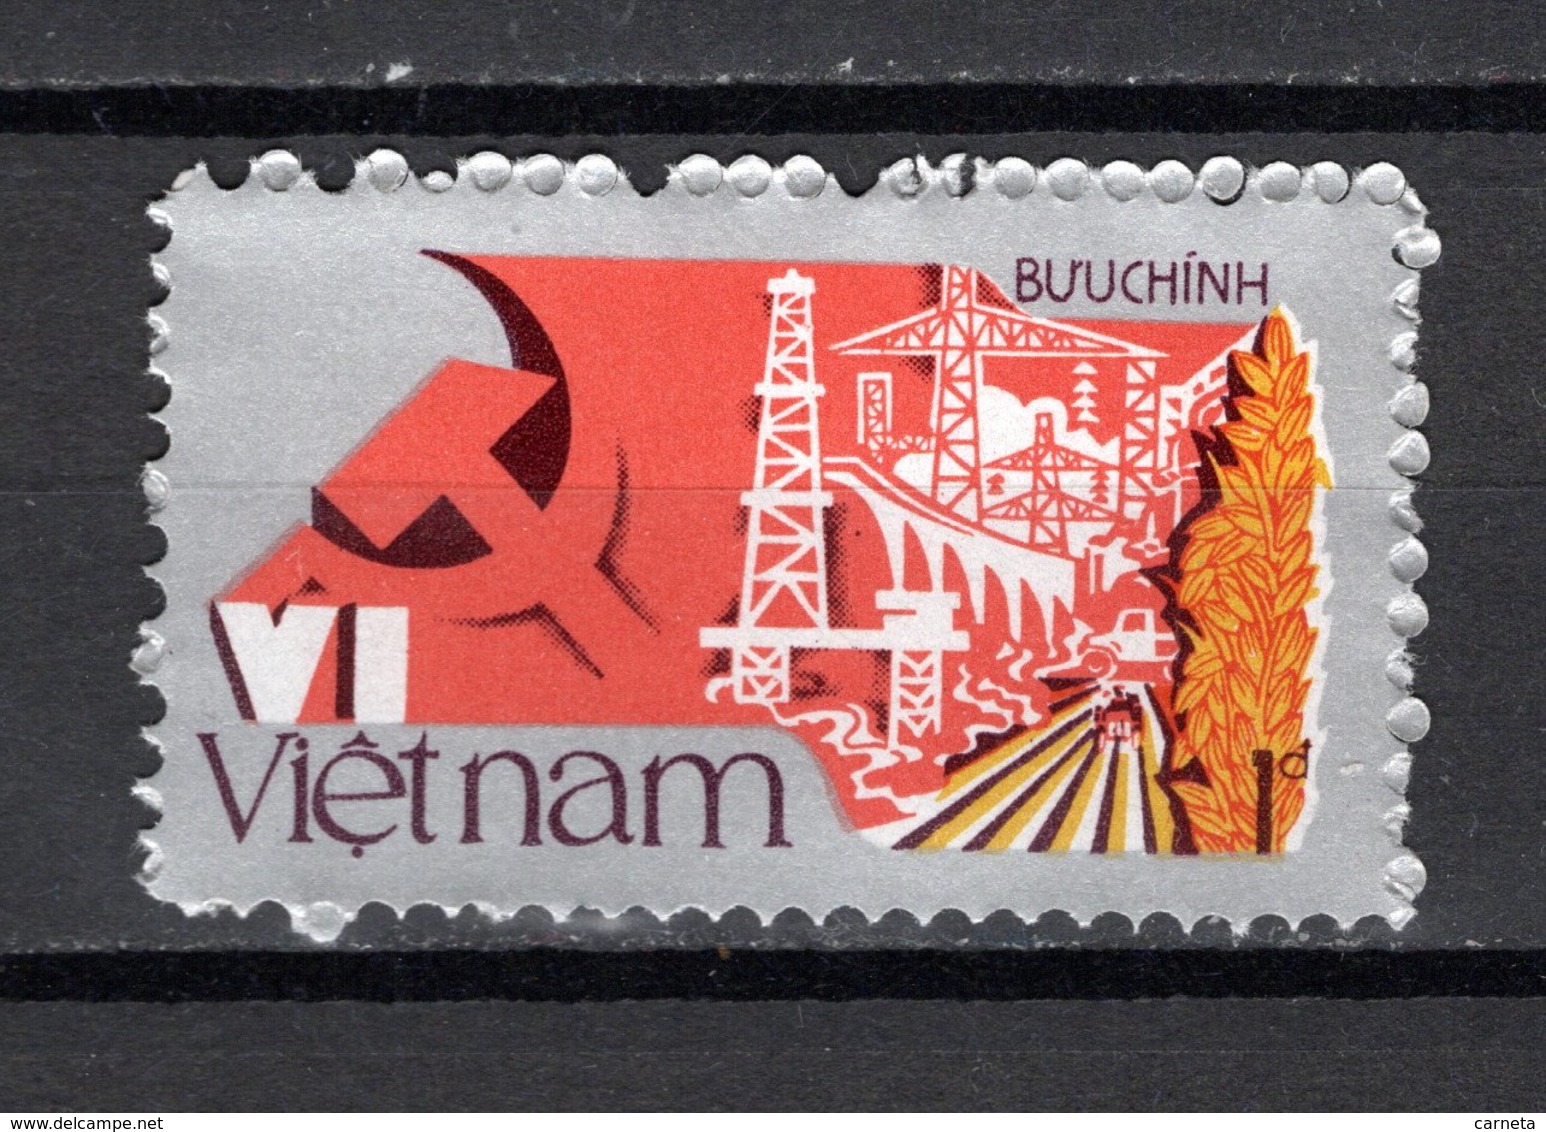 VIETNAM REPUBLIQUE   N° 746     NEUF SANS CHARNIERE COTE 0.65€    PARTI COMMUNISTE - Vietnam